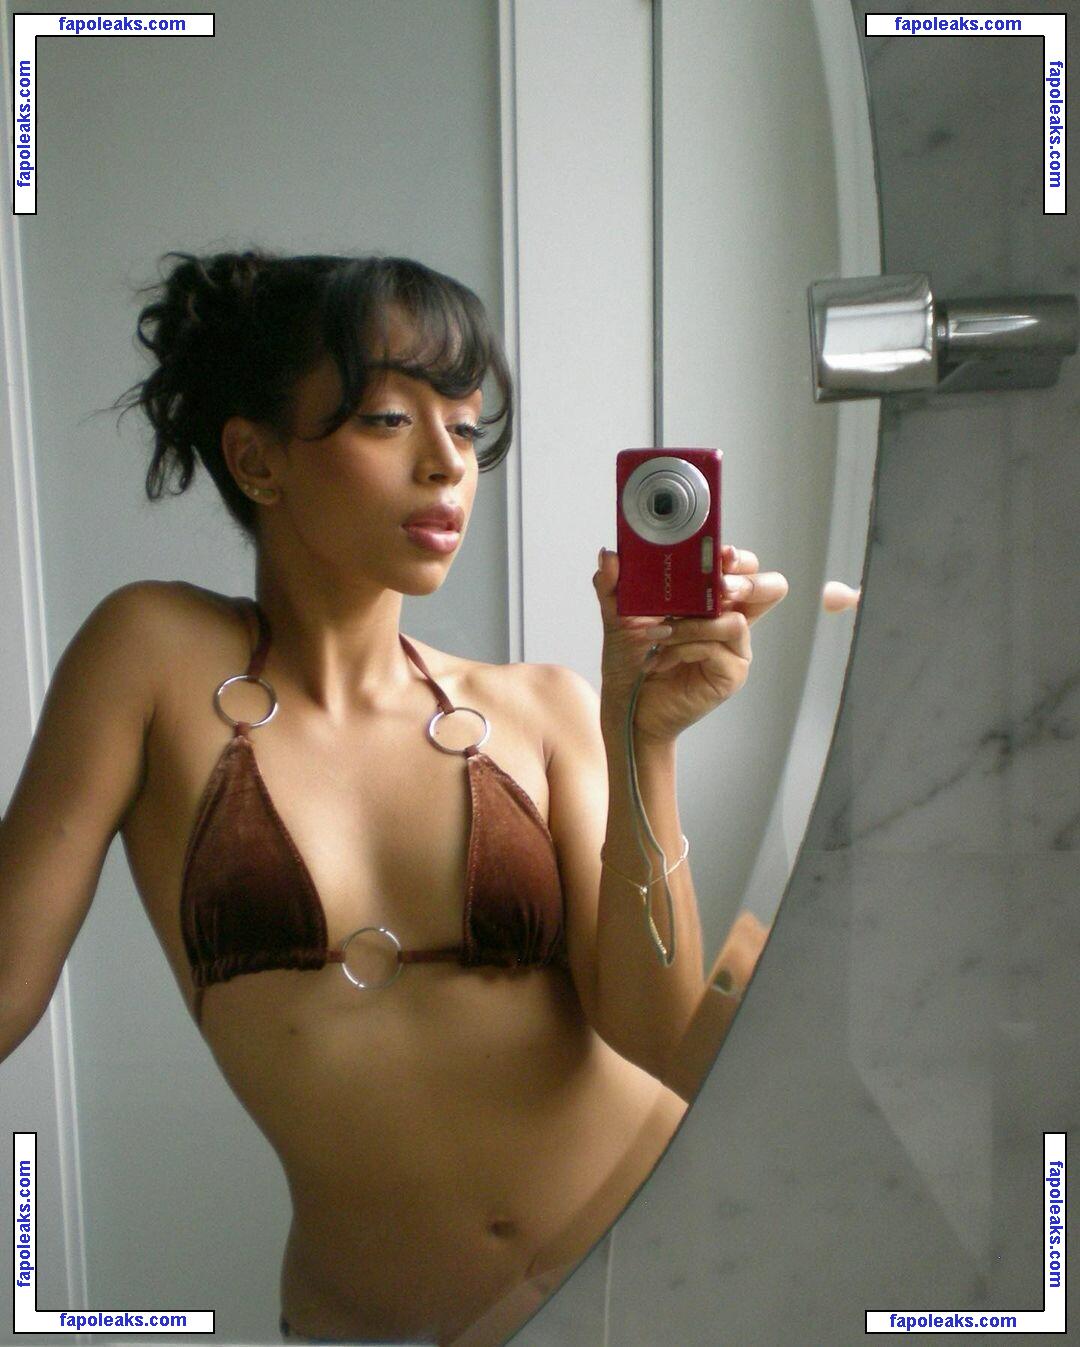 Liza Koshy / lizakoshy nude photo #0126 from OnlyFans